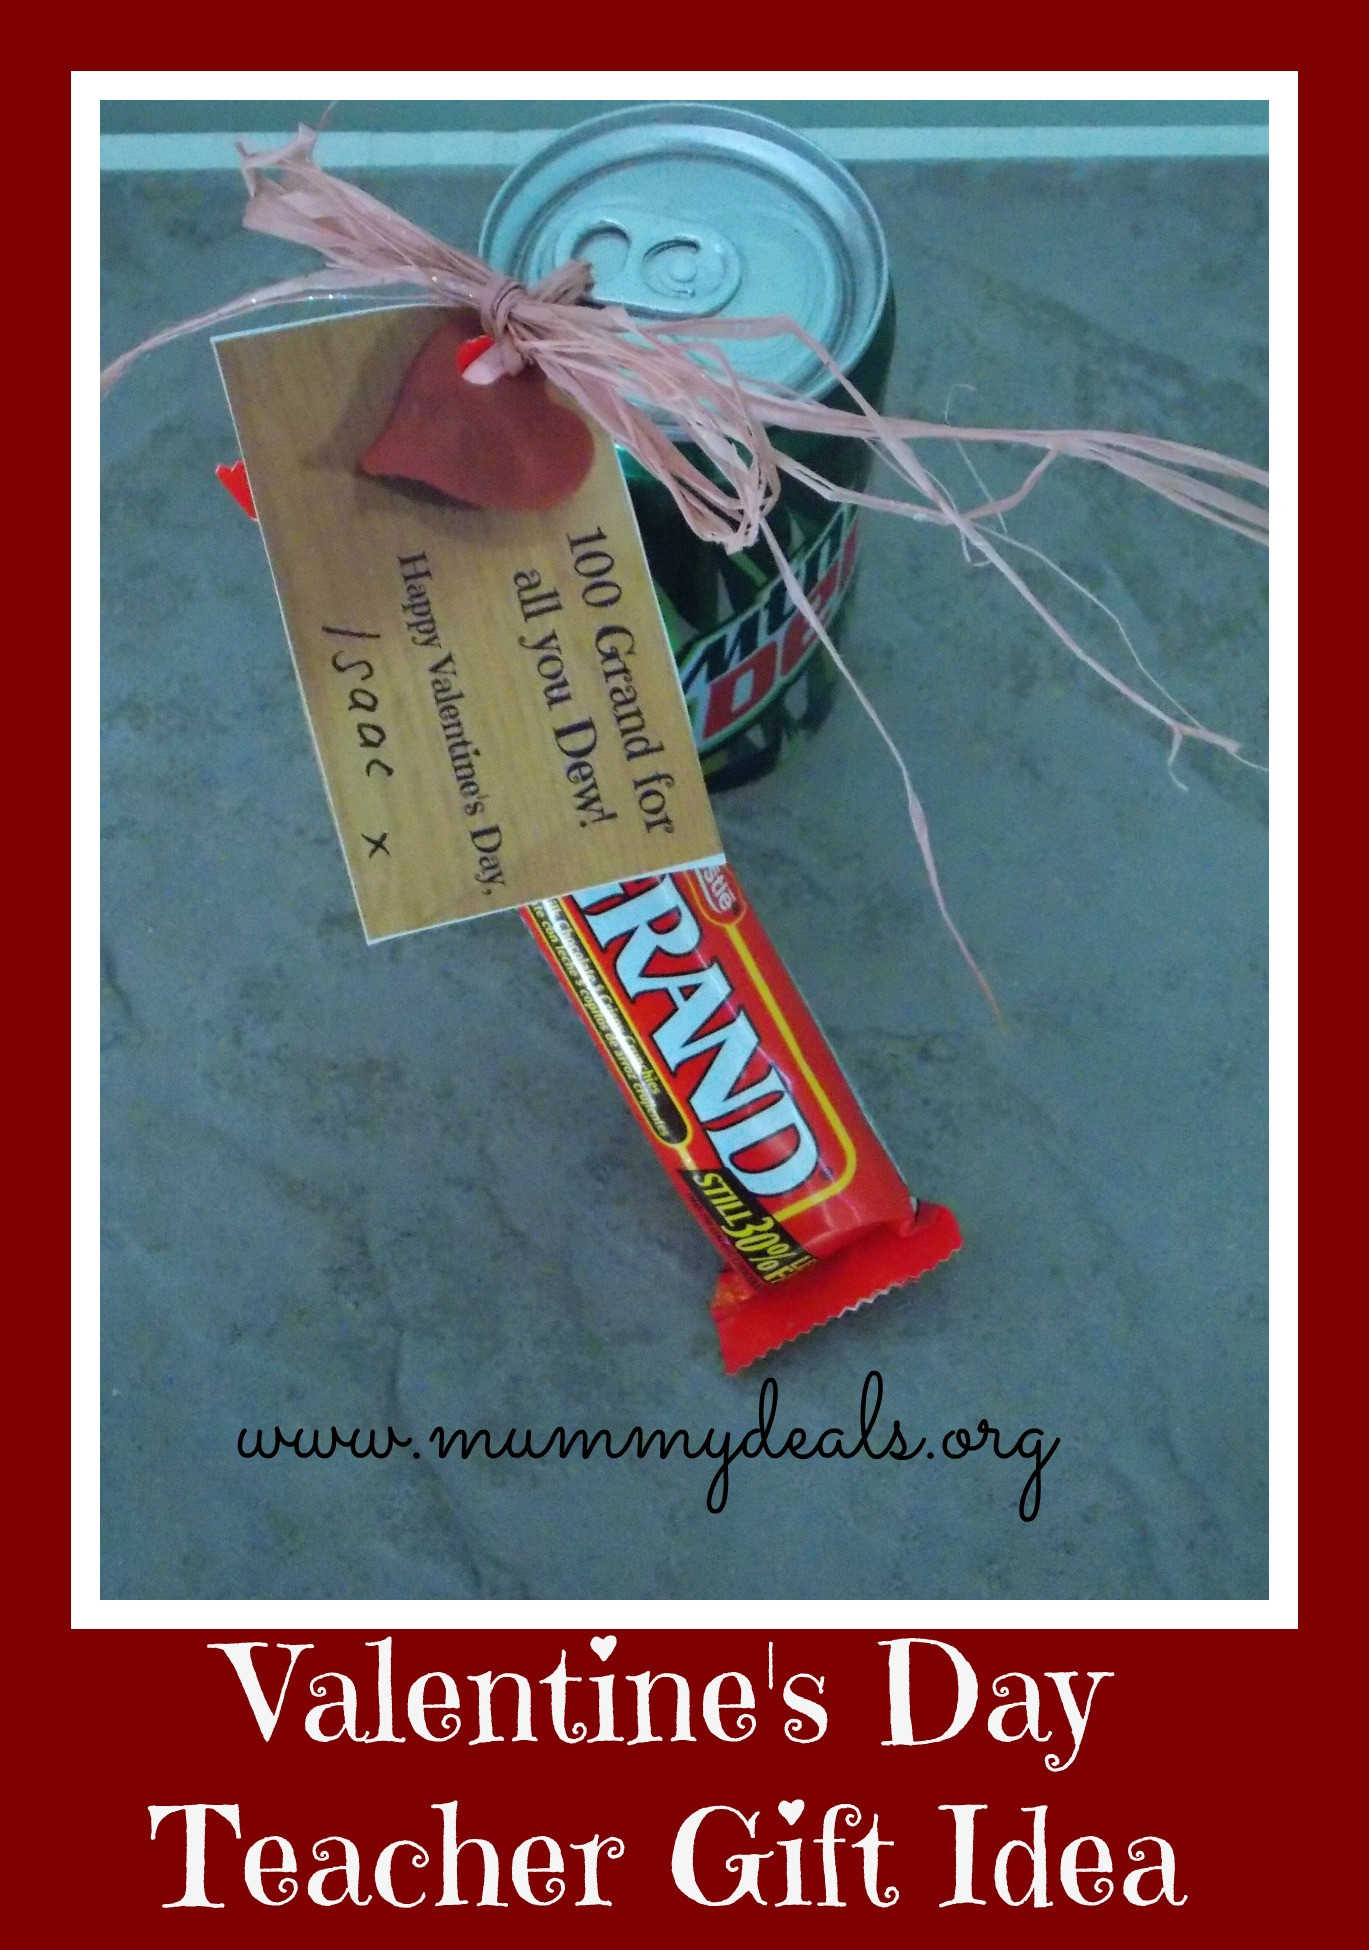 Best ideas about Teacher Valentine Gift Ideas
. Save or Pin 6 Valentine s Day Teacher Gift Ideas Mummy Deals Now.